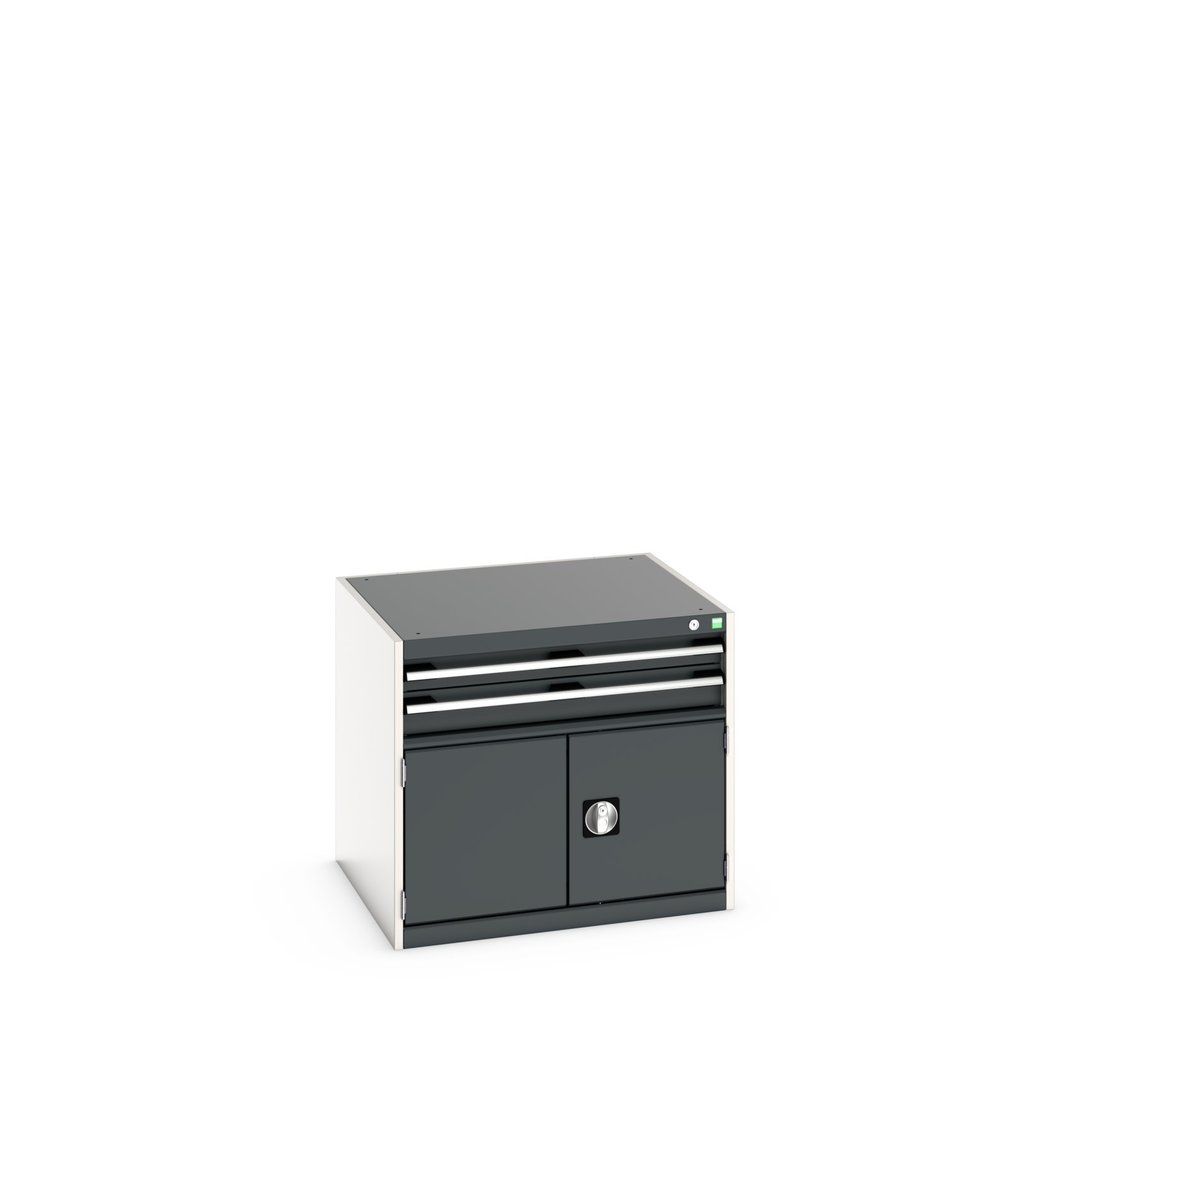 40028095. - cubio drawer-door cabinet